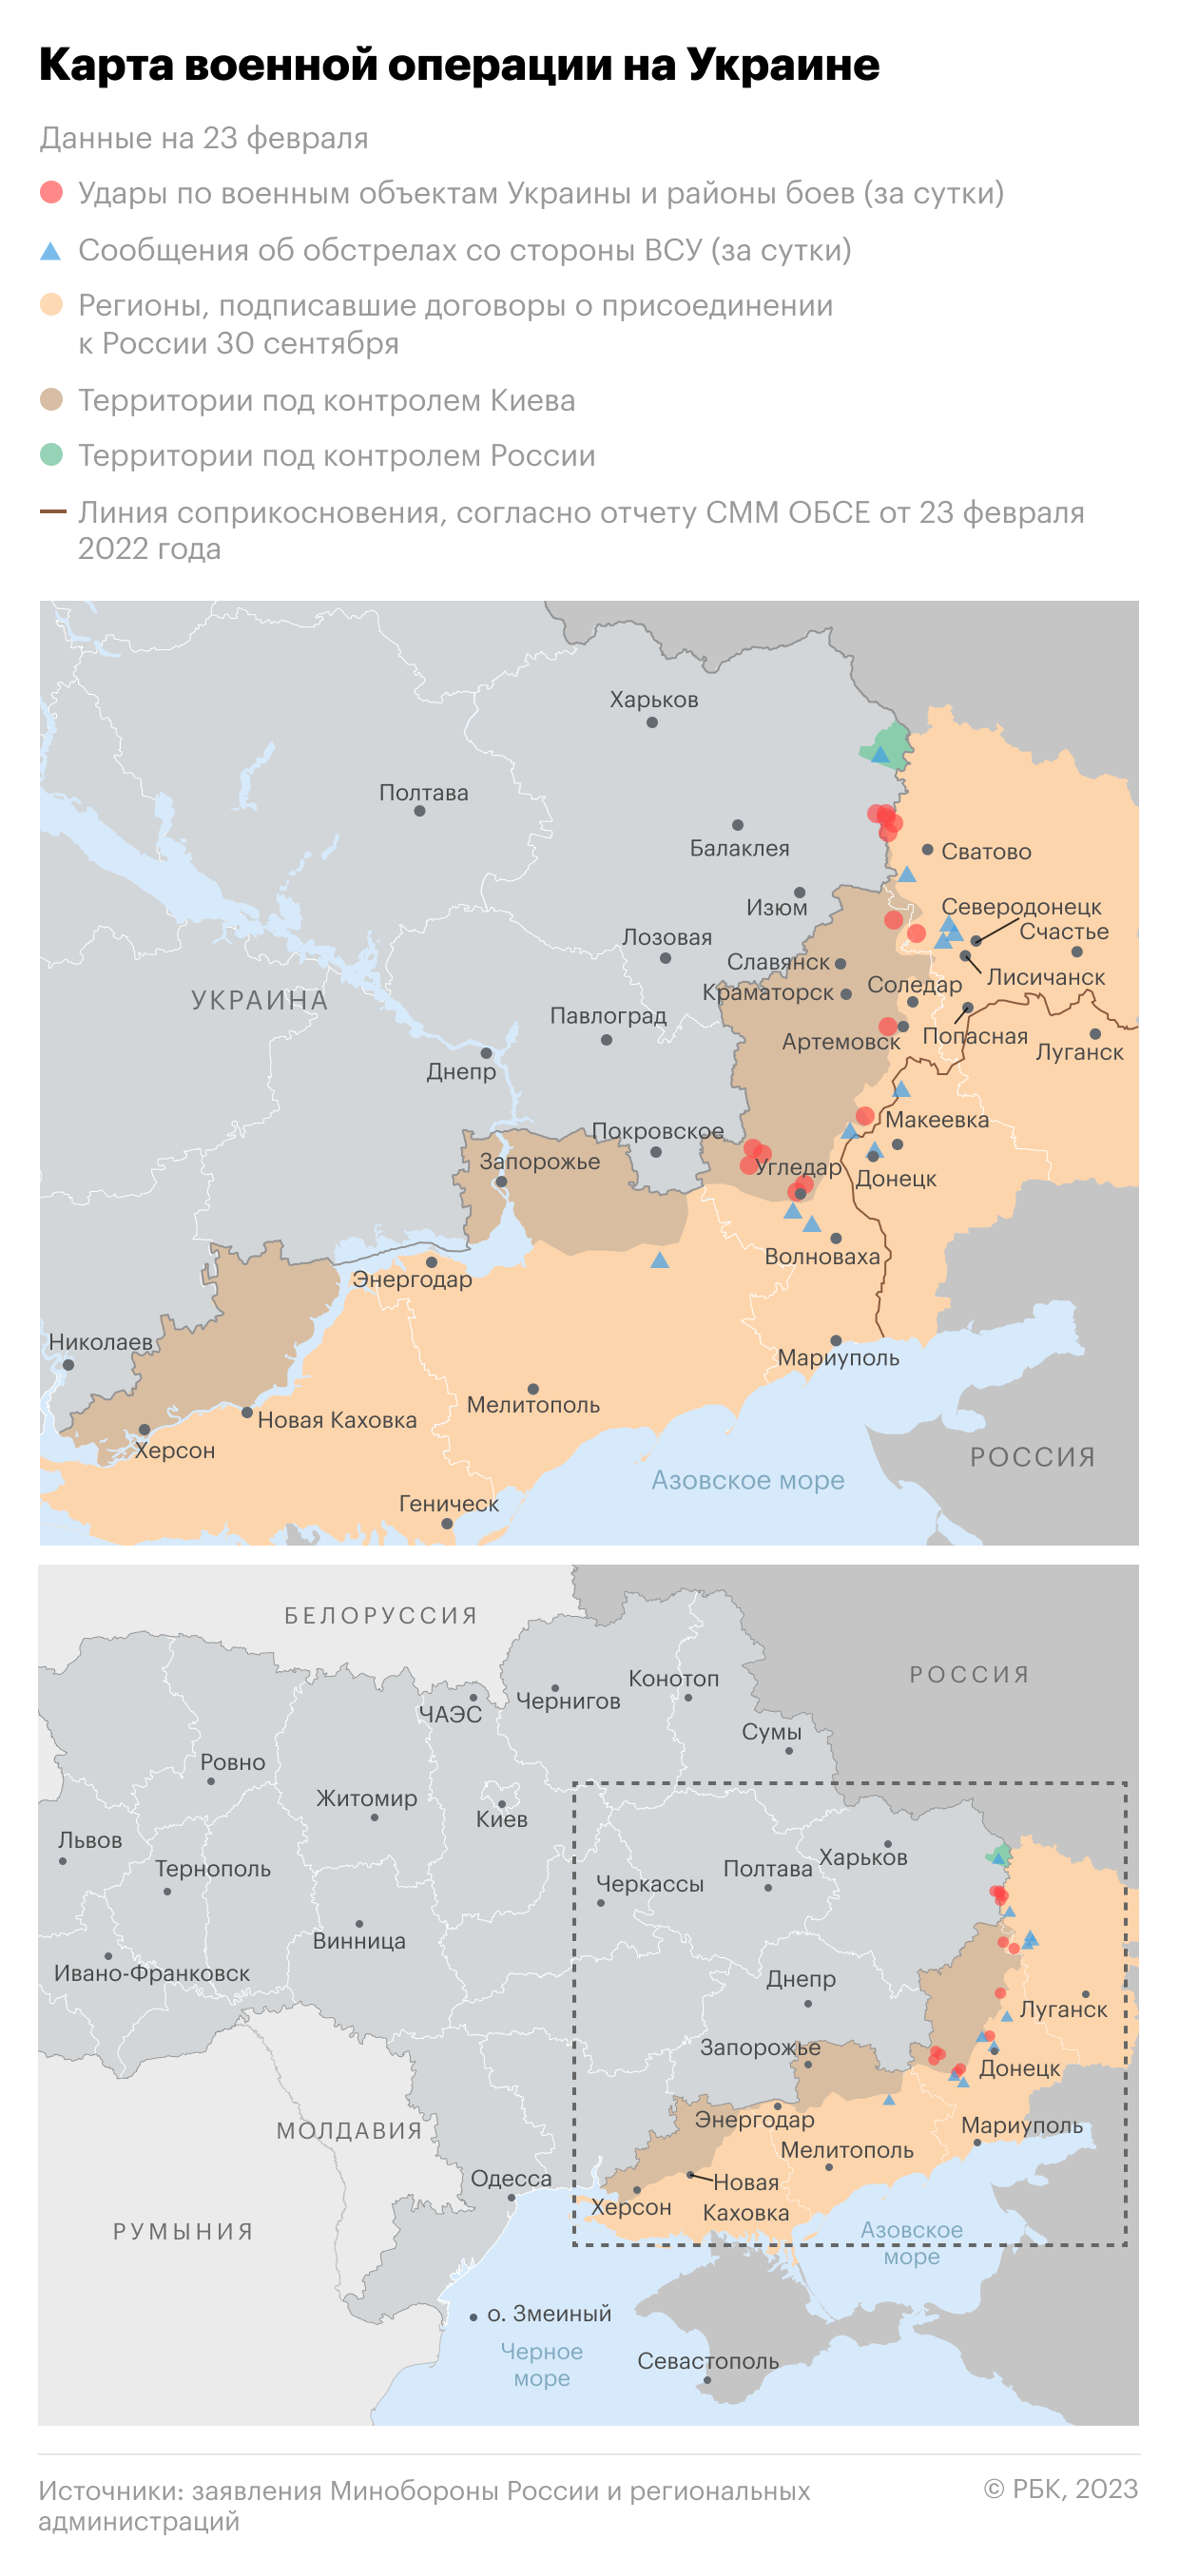 Минобороны сообщило о ликвидации шести групп диверсантов близ Харькова"/>













